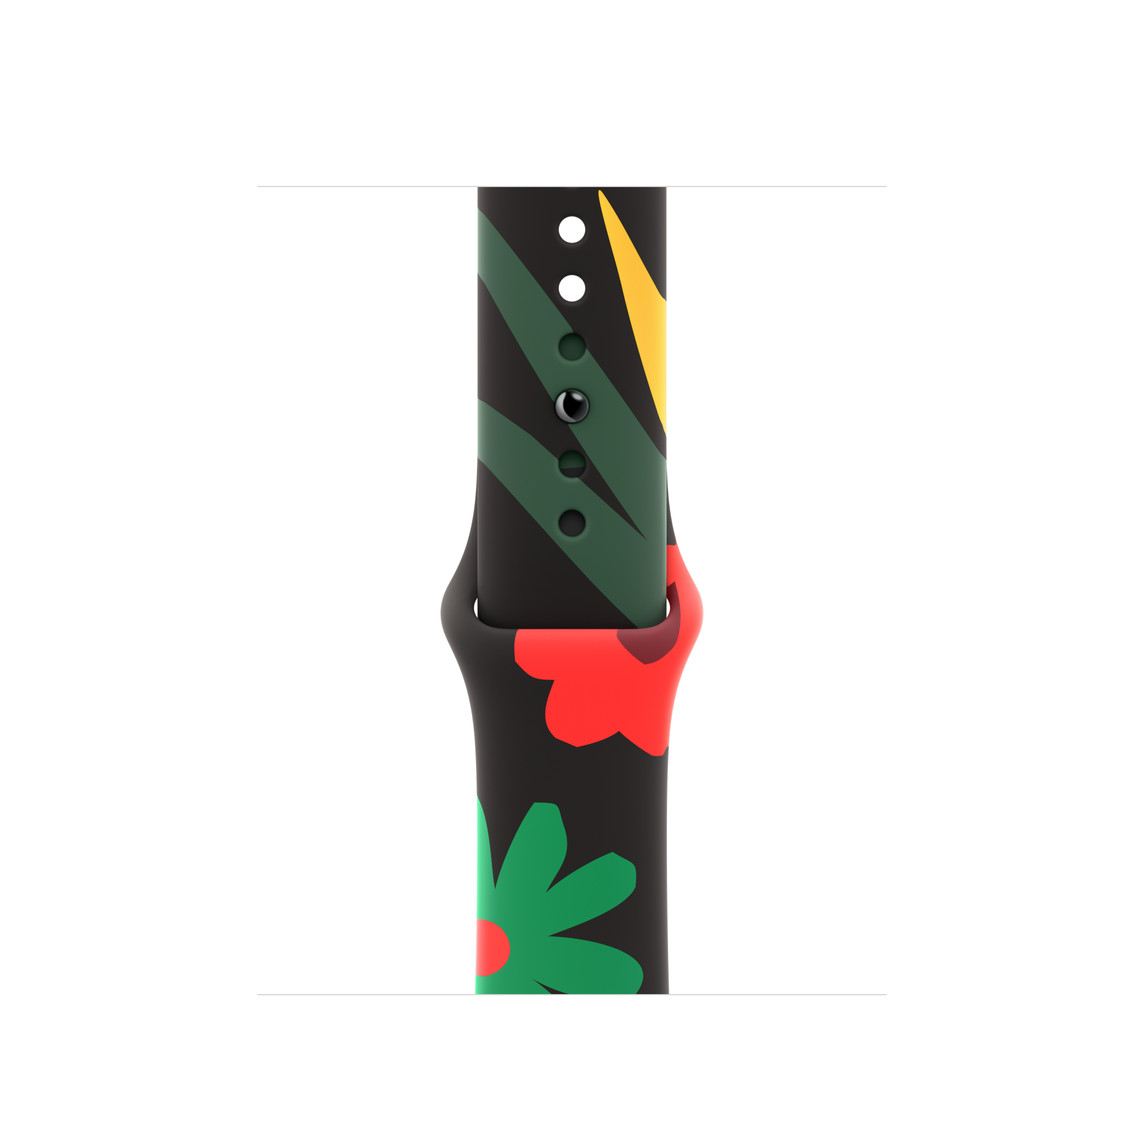 Sade bir tarzda ve kırmızı, yeşil, sarı renklerde çizilmiş farklı şekil ve boyutlarda çiçek resimlerine sahip Birlik Buketi tasarımlı Black Unity Spor Kordon.